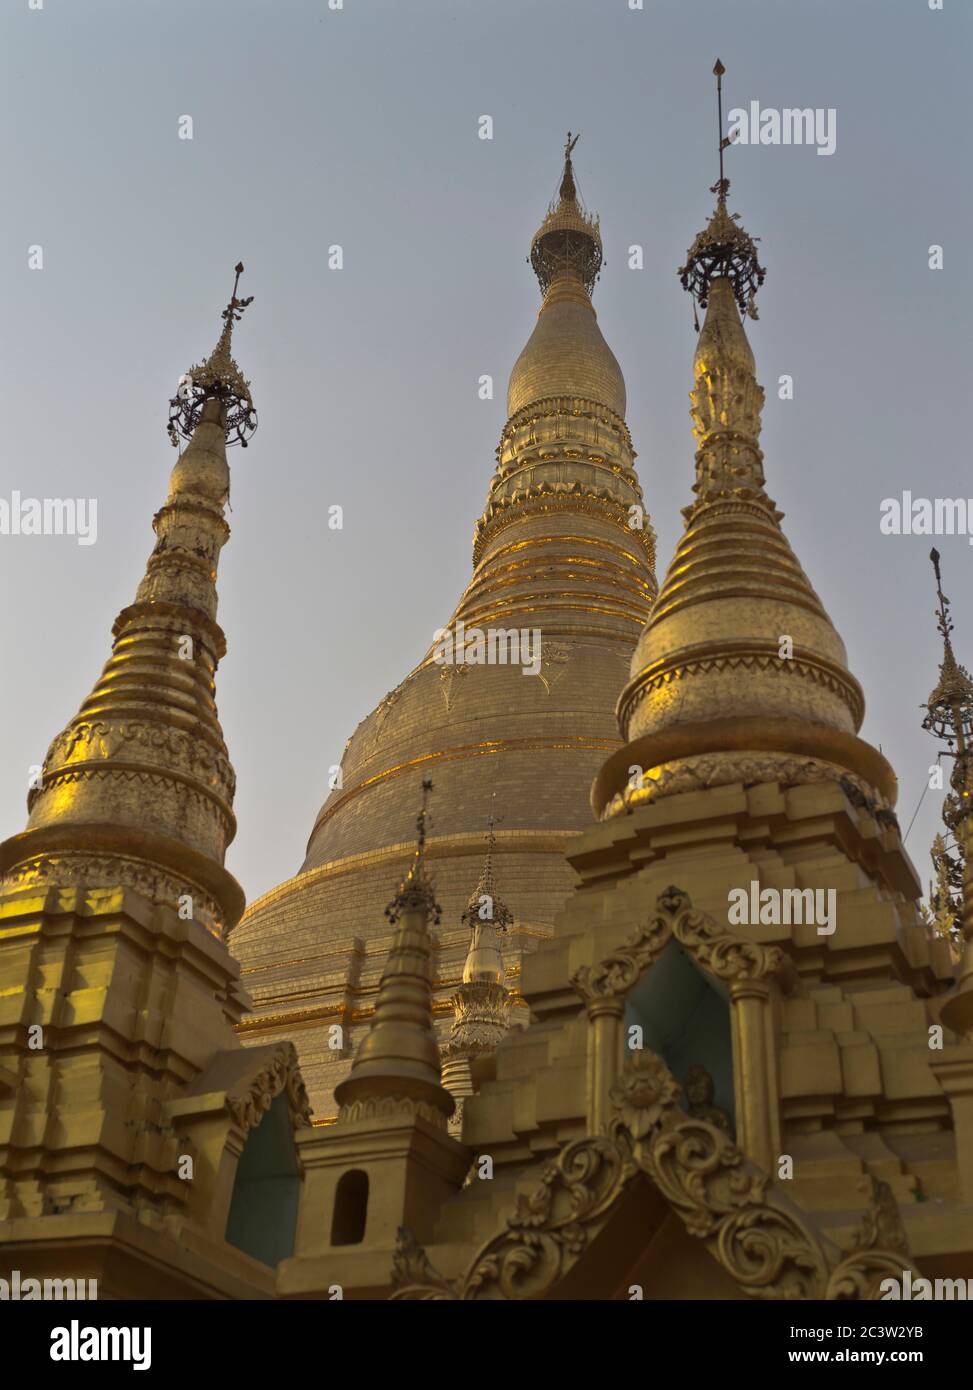 dh Shwedagon Pagoda temple YANGON MYANMAR Burmese Buddhist temples Great Dagon Zedi Daw golden stupa gold leaf Stock Photo